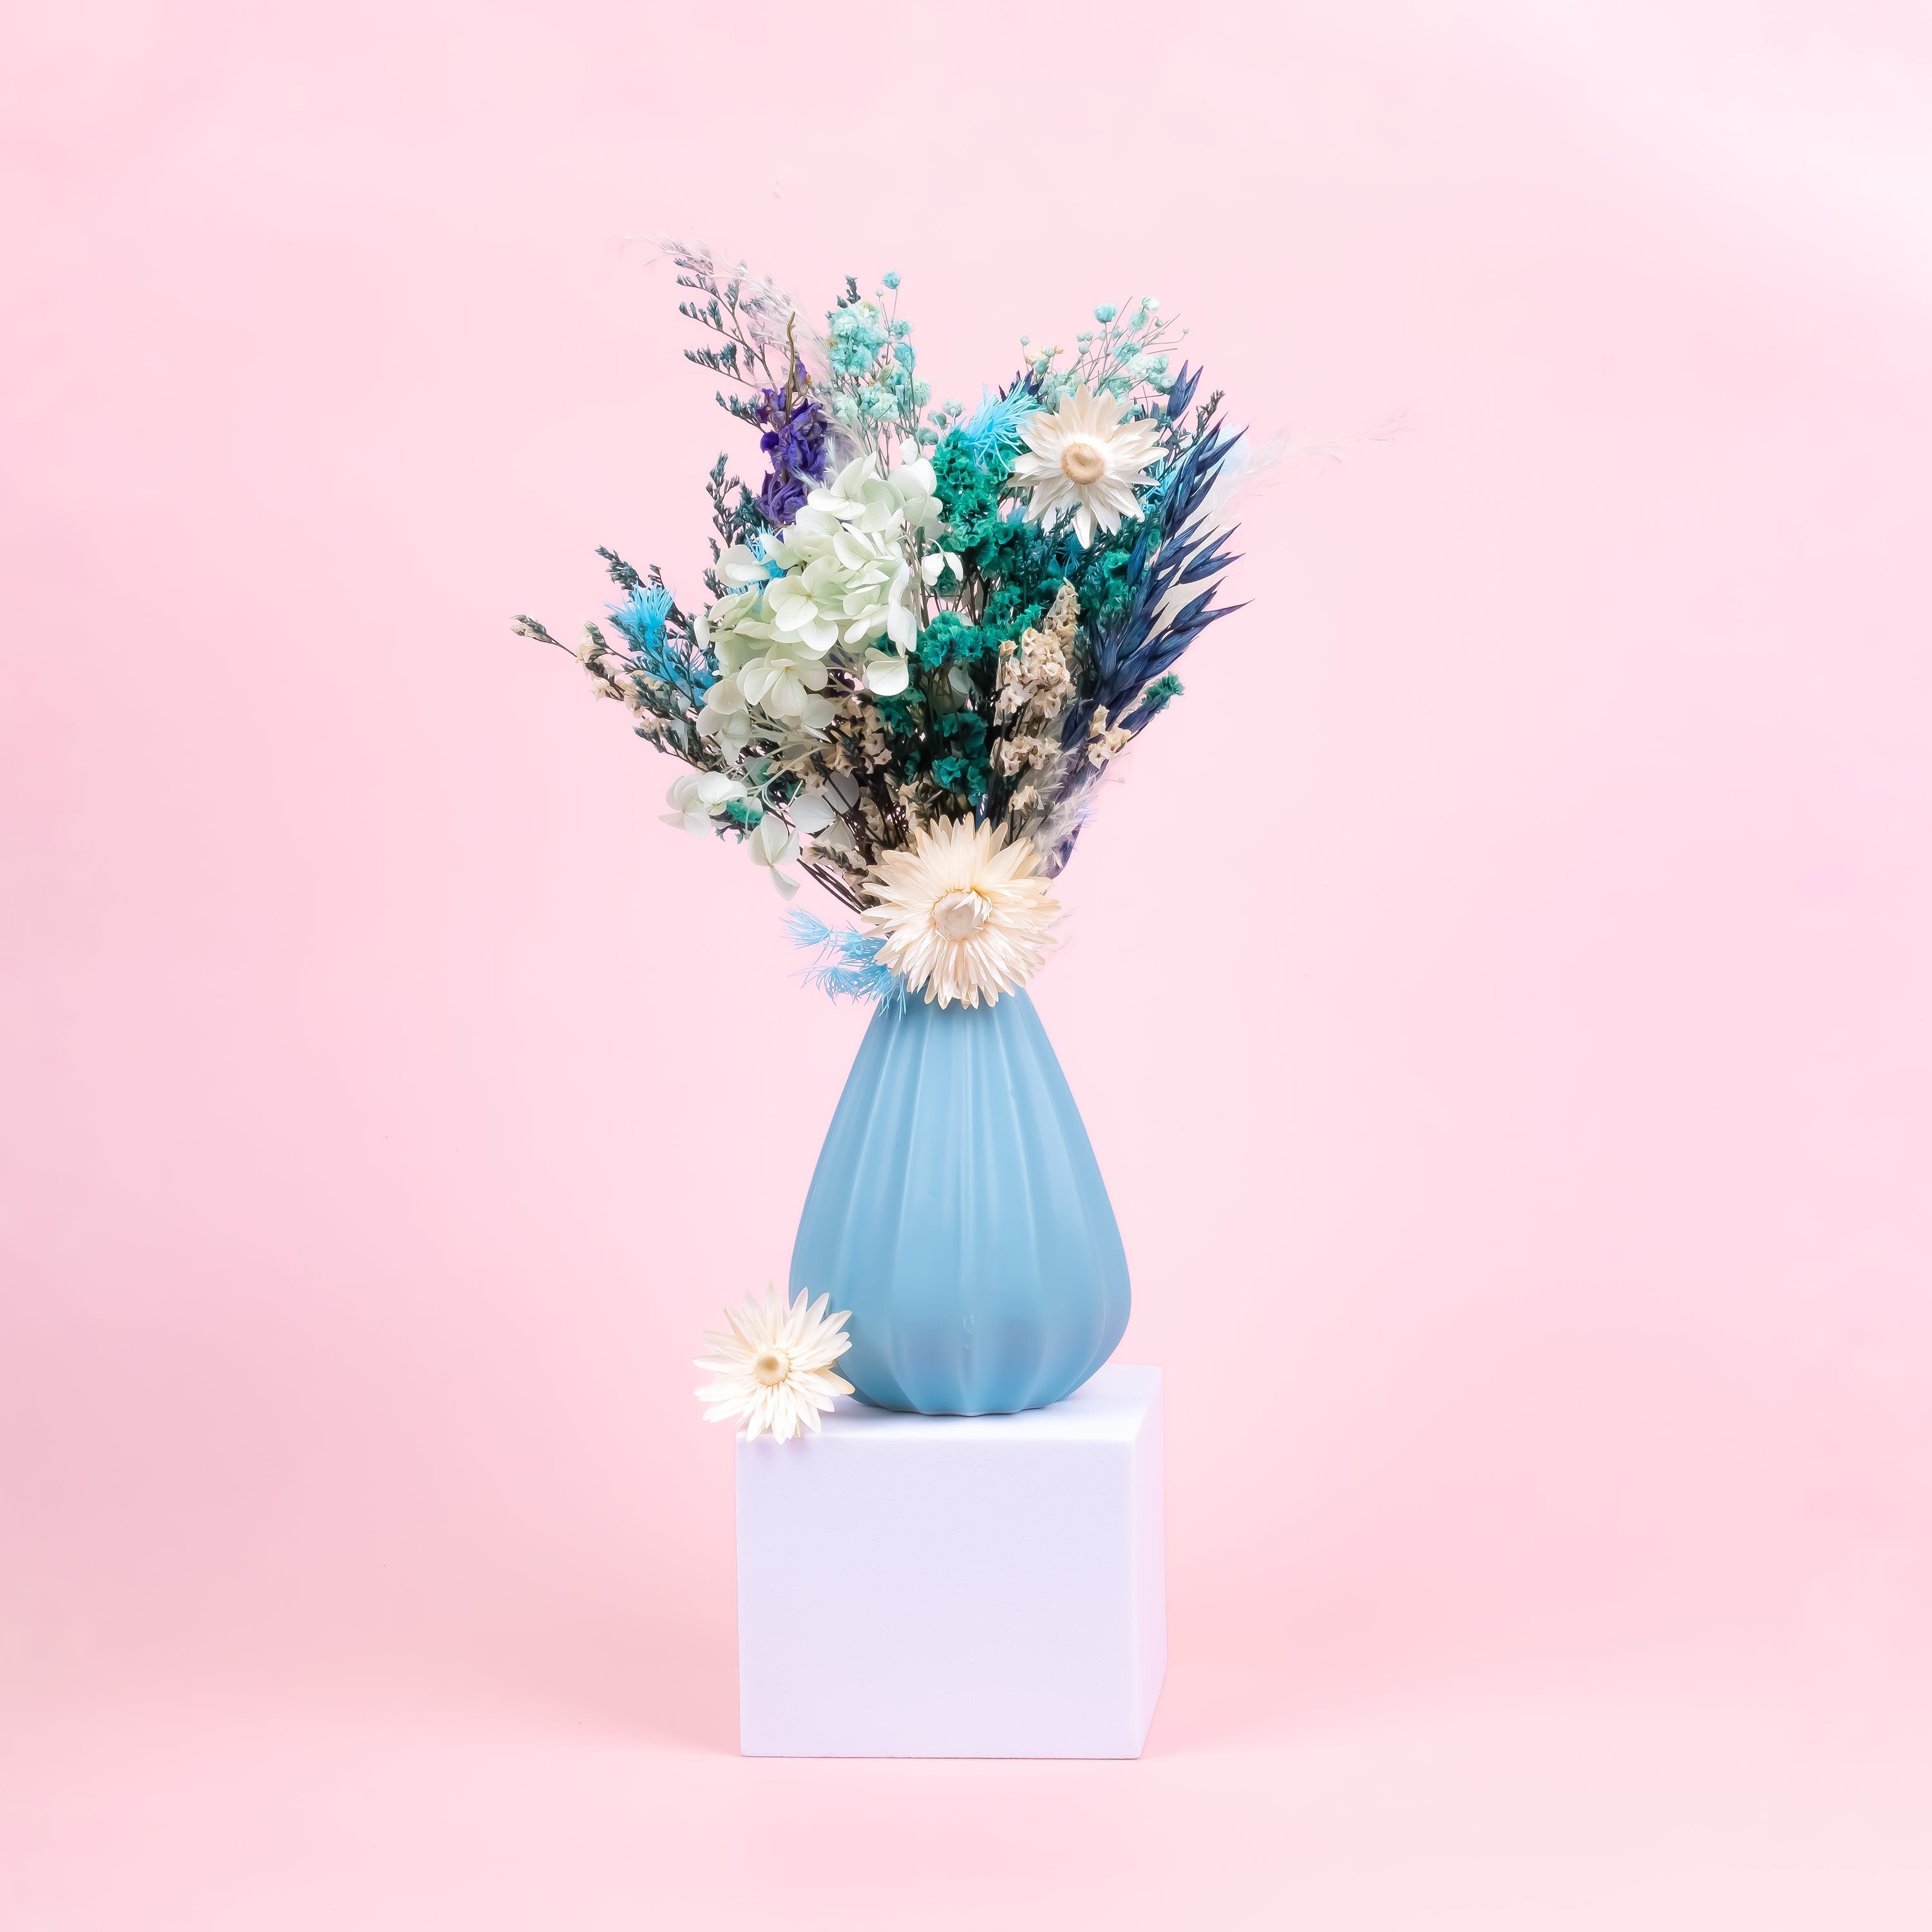 Blau, Farben frohen in Blüten Getrocknete Kunstharz.Art - Trockenblume